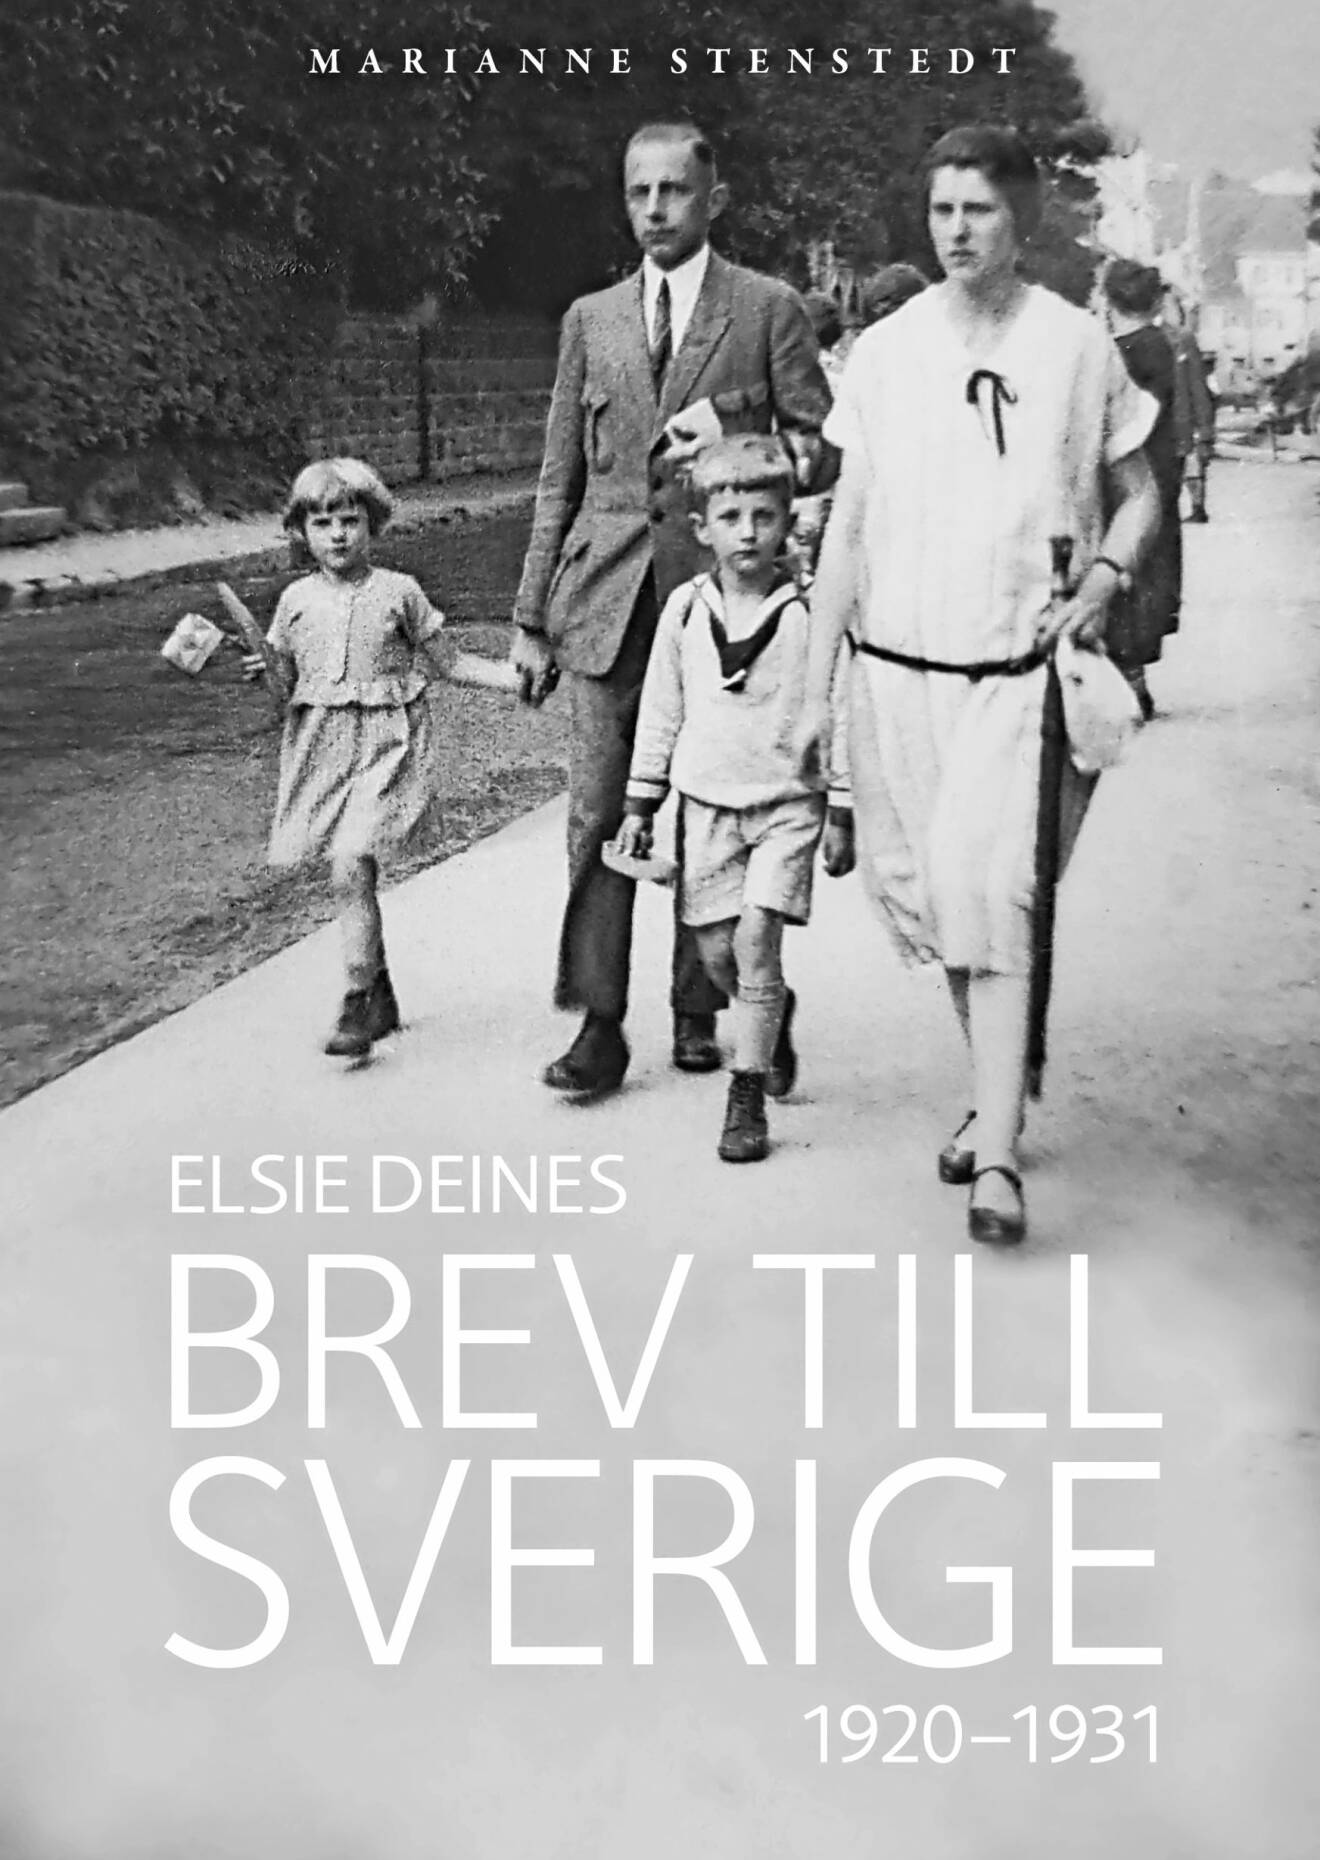 Omslaget till Marianne Stenstedt bok "Brev till Sverige".